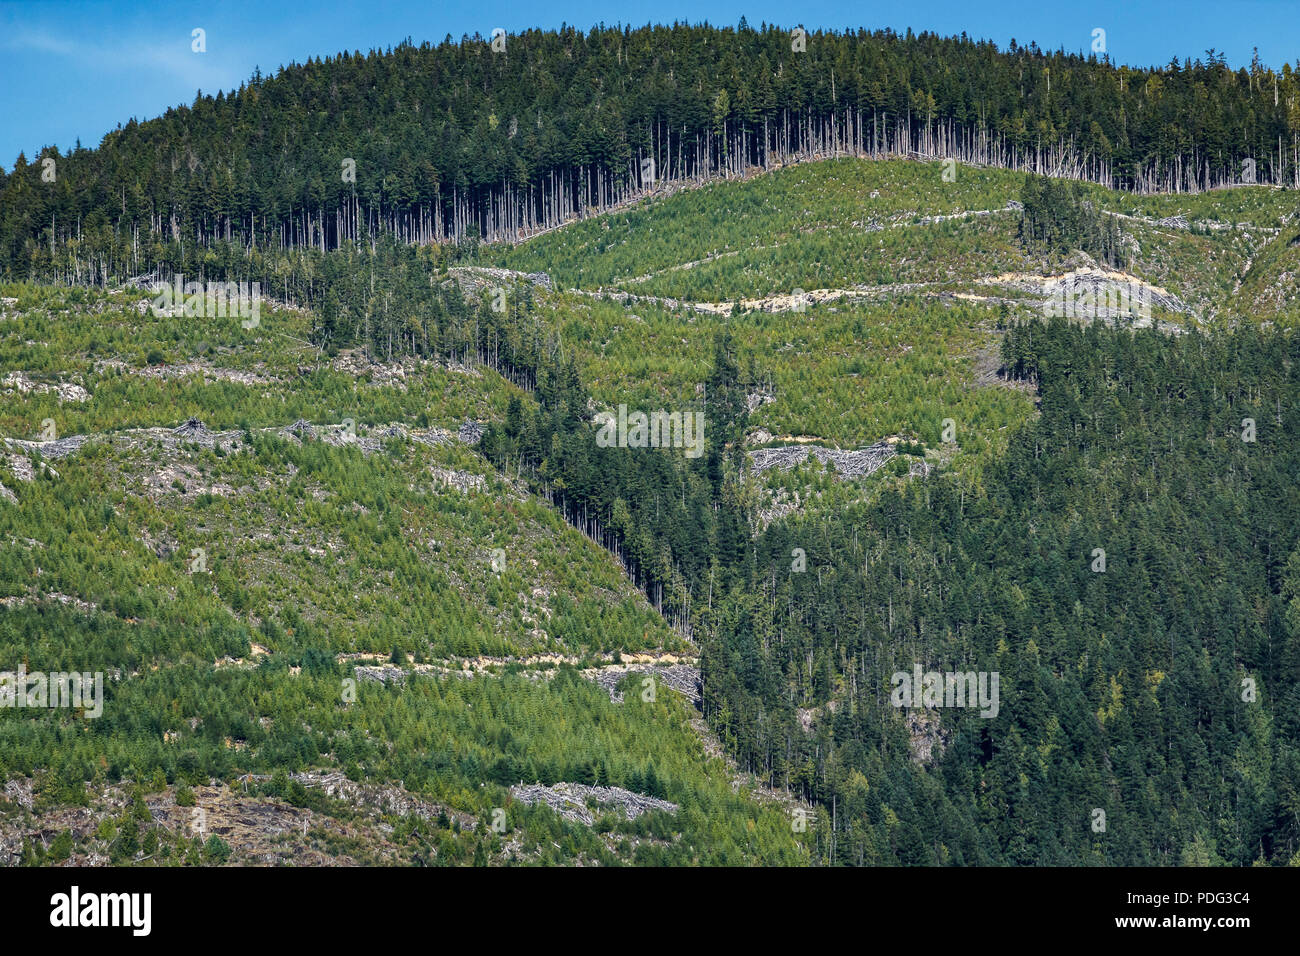 Une grande partie de la montagne, dans la région côtière de la Colombie-Britannique a été replantés, mais les routes forestières, les arbres abattus et de réduire la cicatrice encore le paysage. Banque D'Images